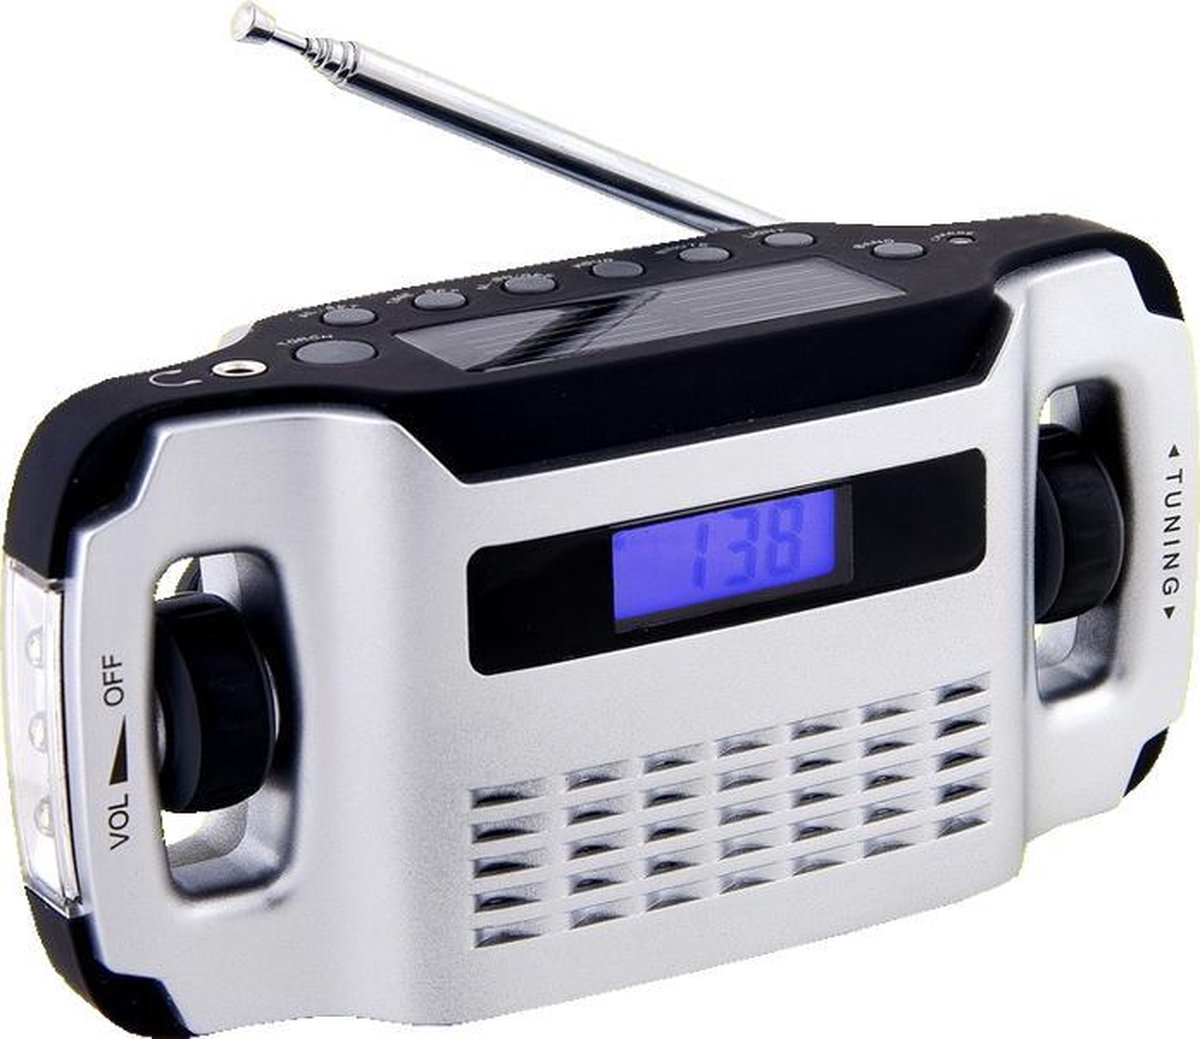 Radio de poche solaire & dynamo avec écran LCD, Radios FM / Numériques